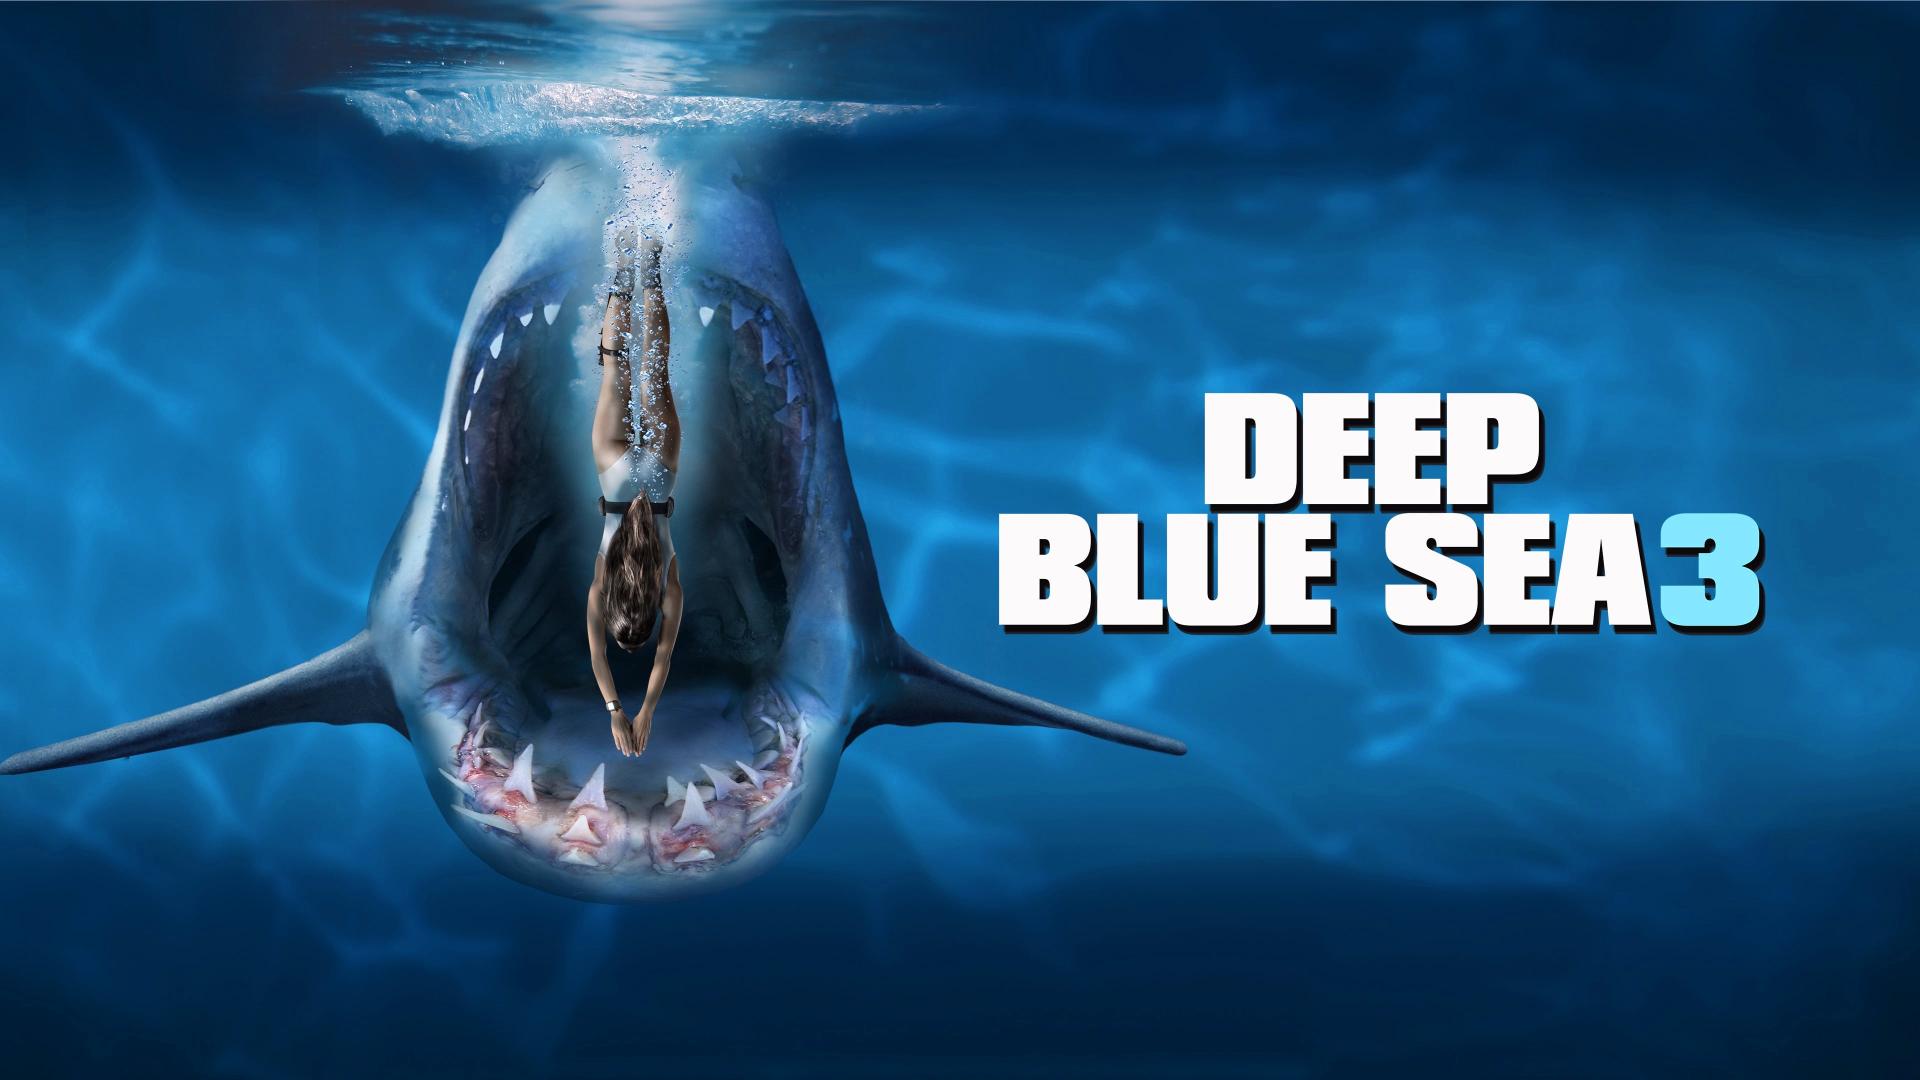 Deep Blue Sea 3 - Háborgó mélység 3. (2020)